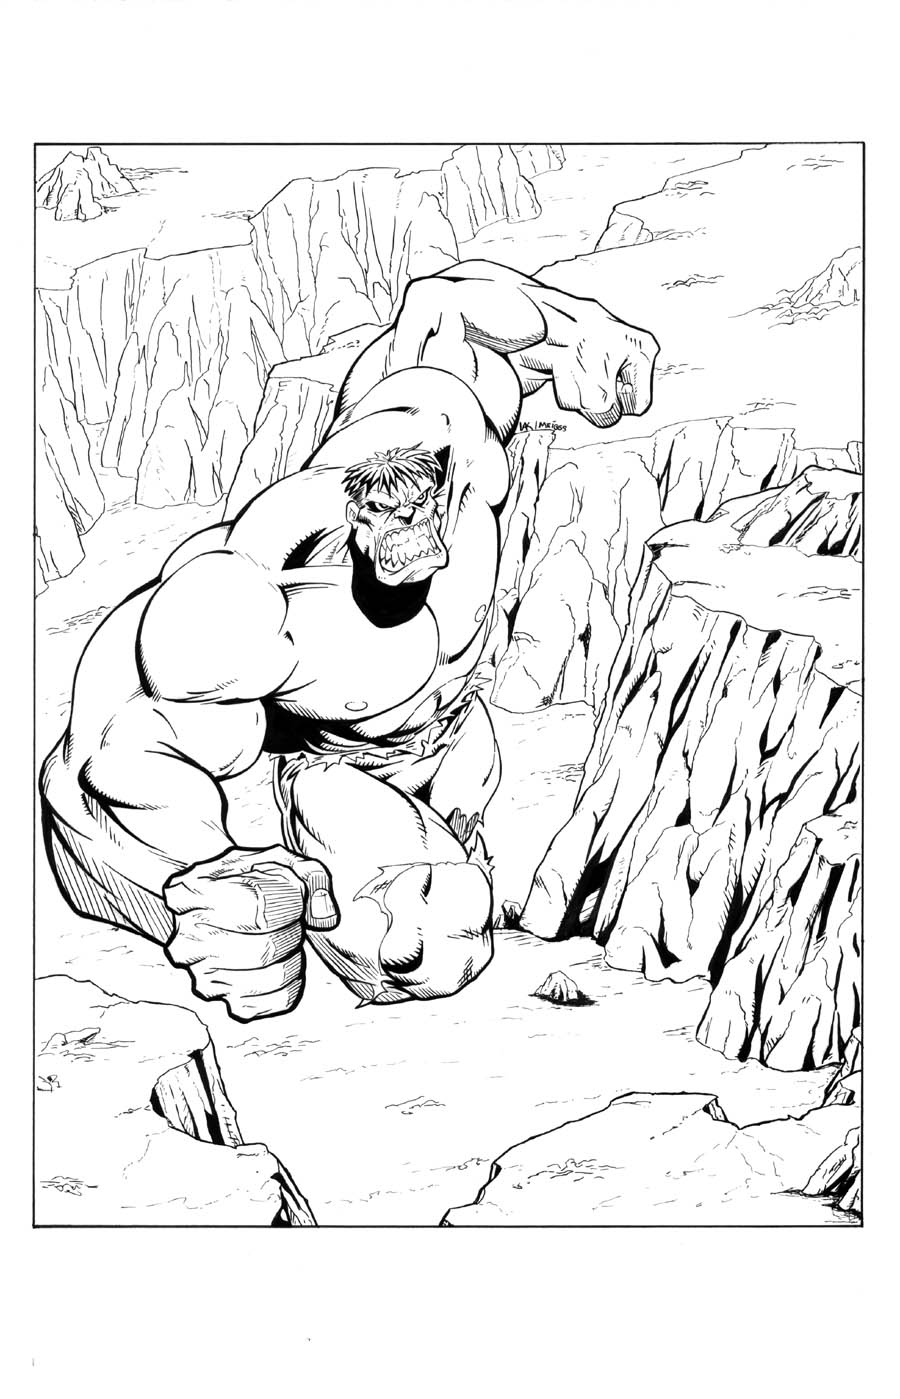 Hulk inked once again